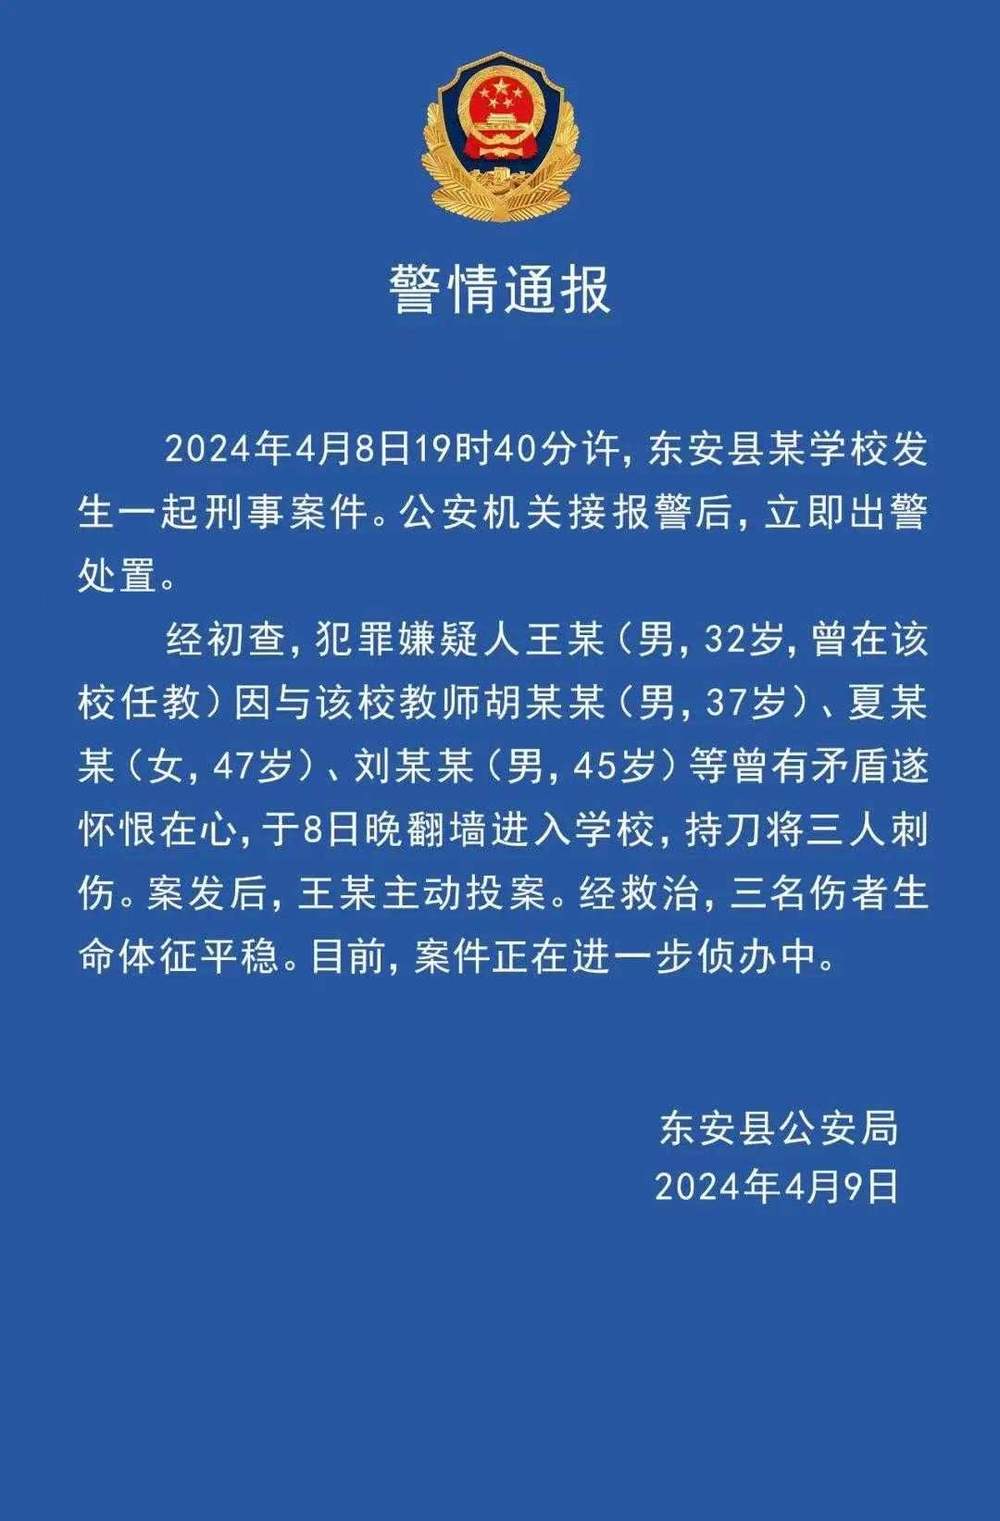 湖南省东安县某学校发生伤人事件致3名老师受伤，警方最新通报：行凶者系离职老师